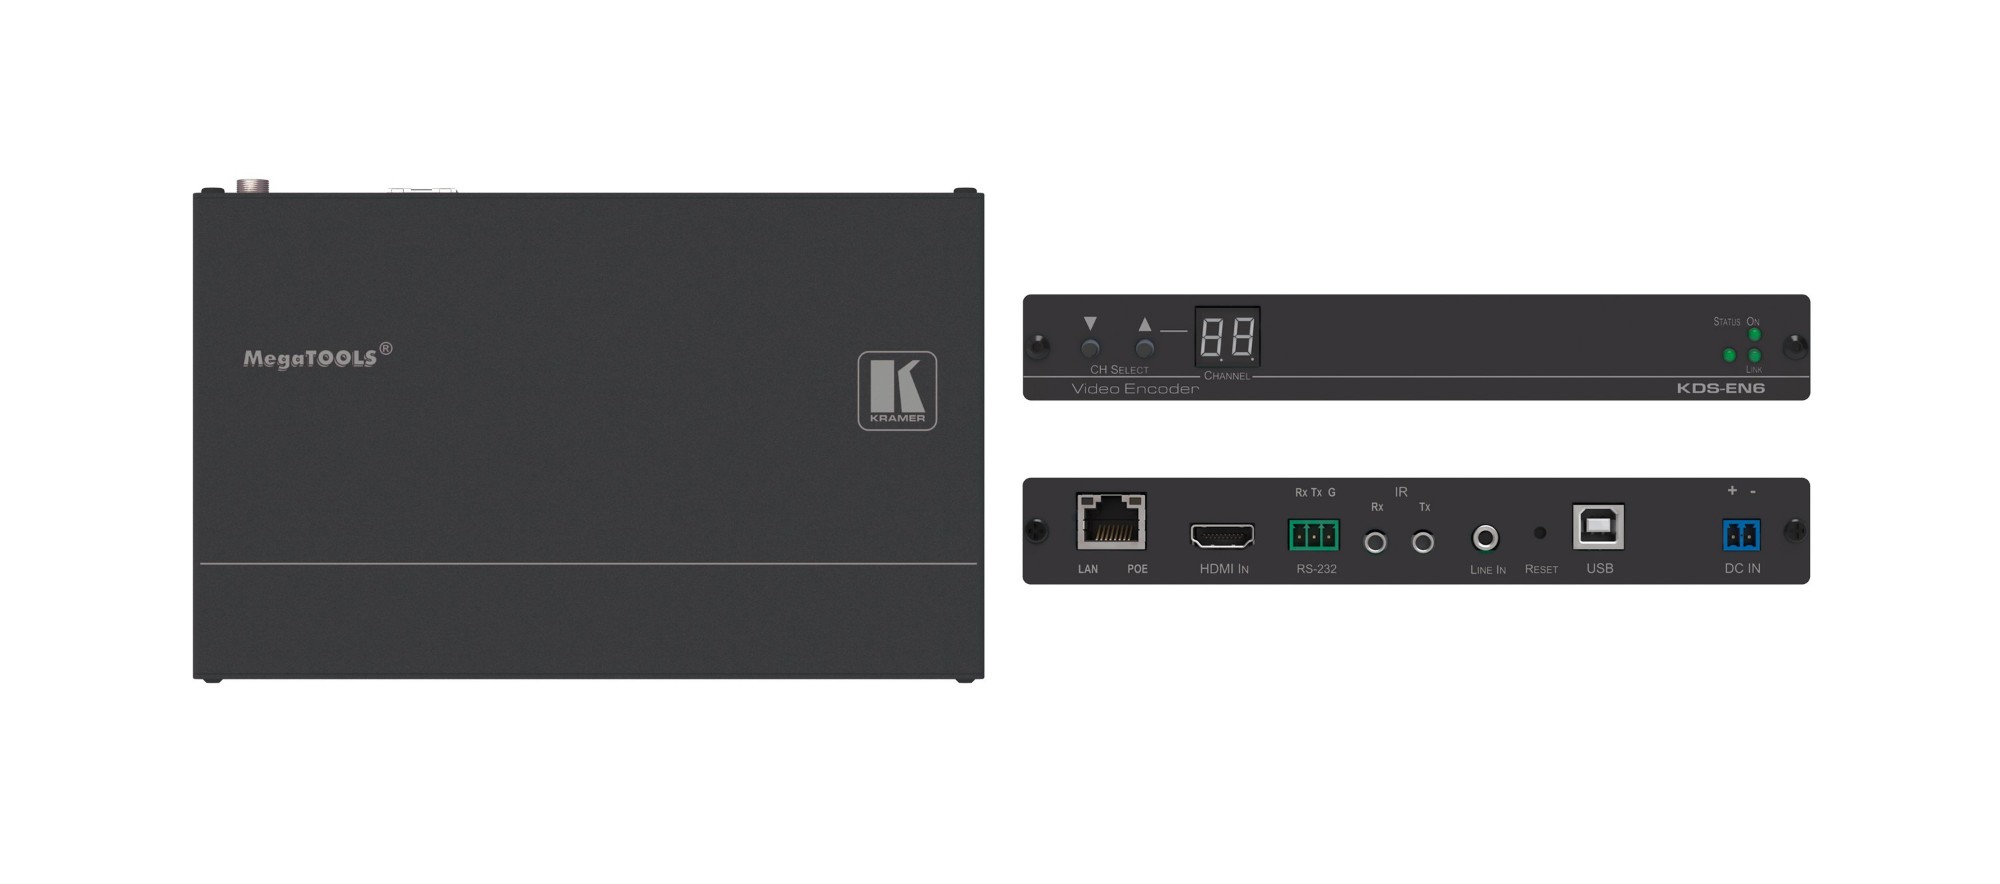 Kramer Electronics KDS-EN6 AV extender AV receiver Black